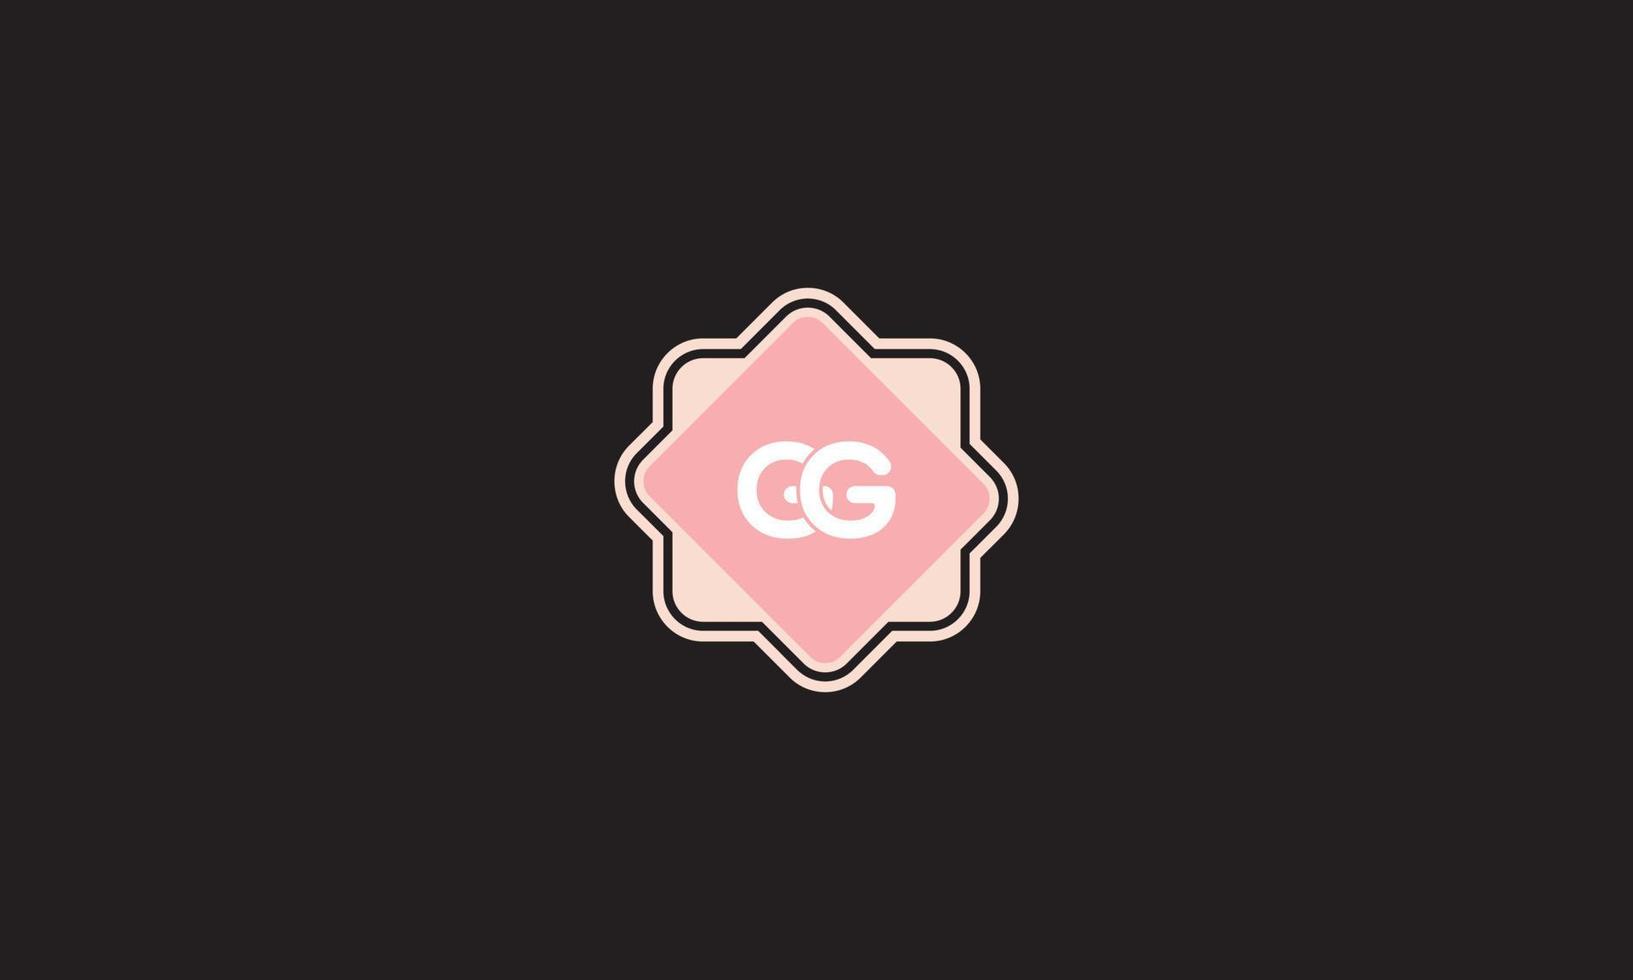 logotipo de letra gg con plantilla de vector libre de vector de formas geométricas.